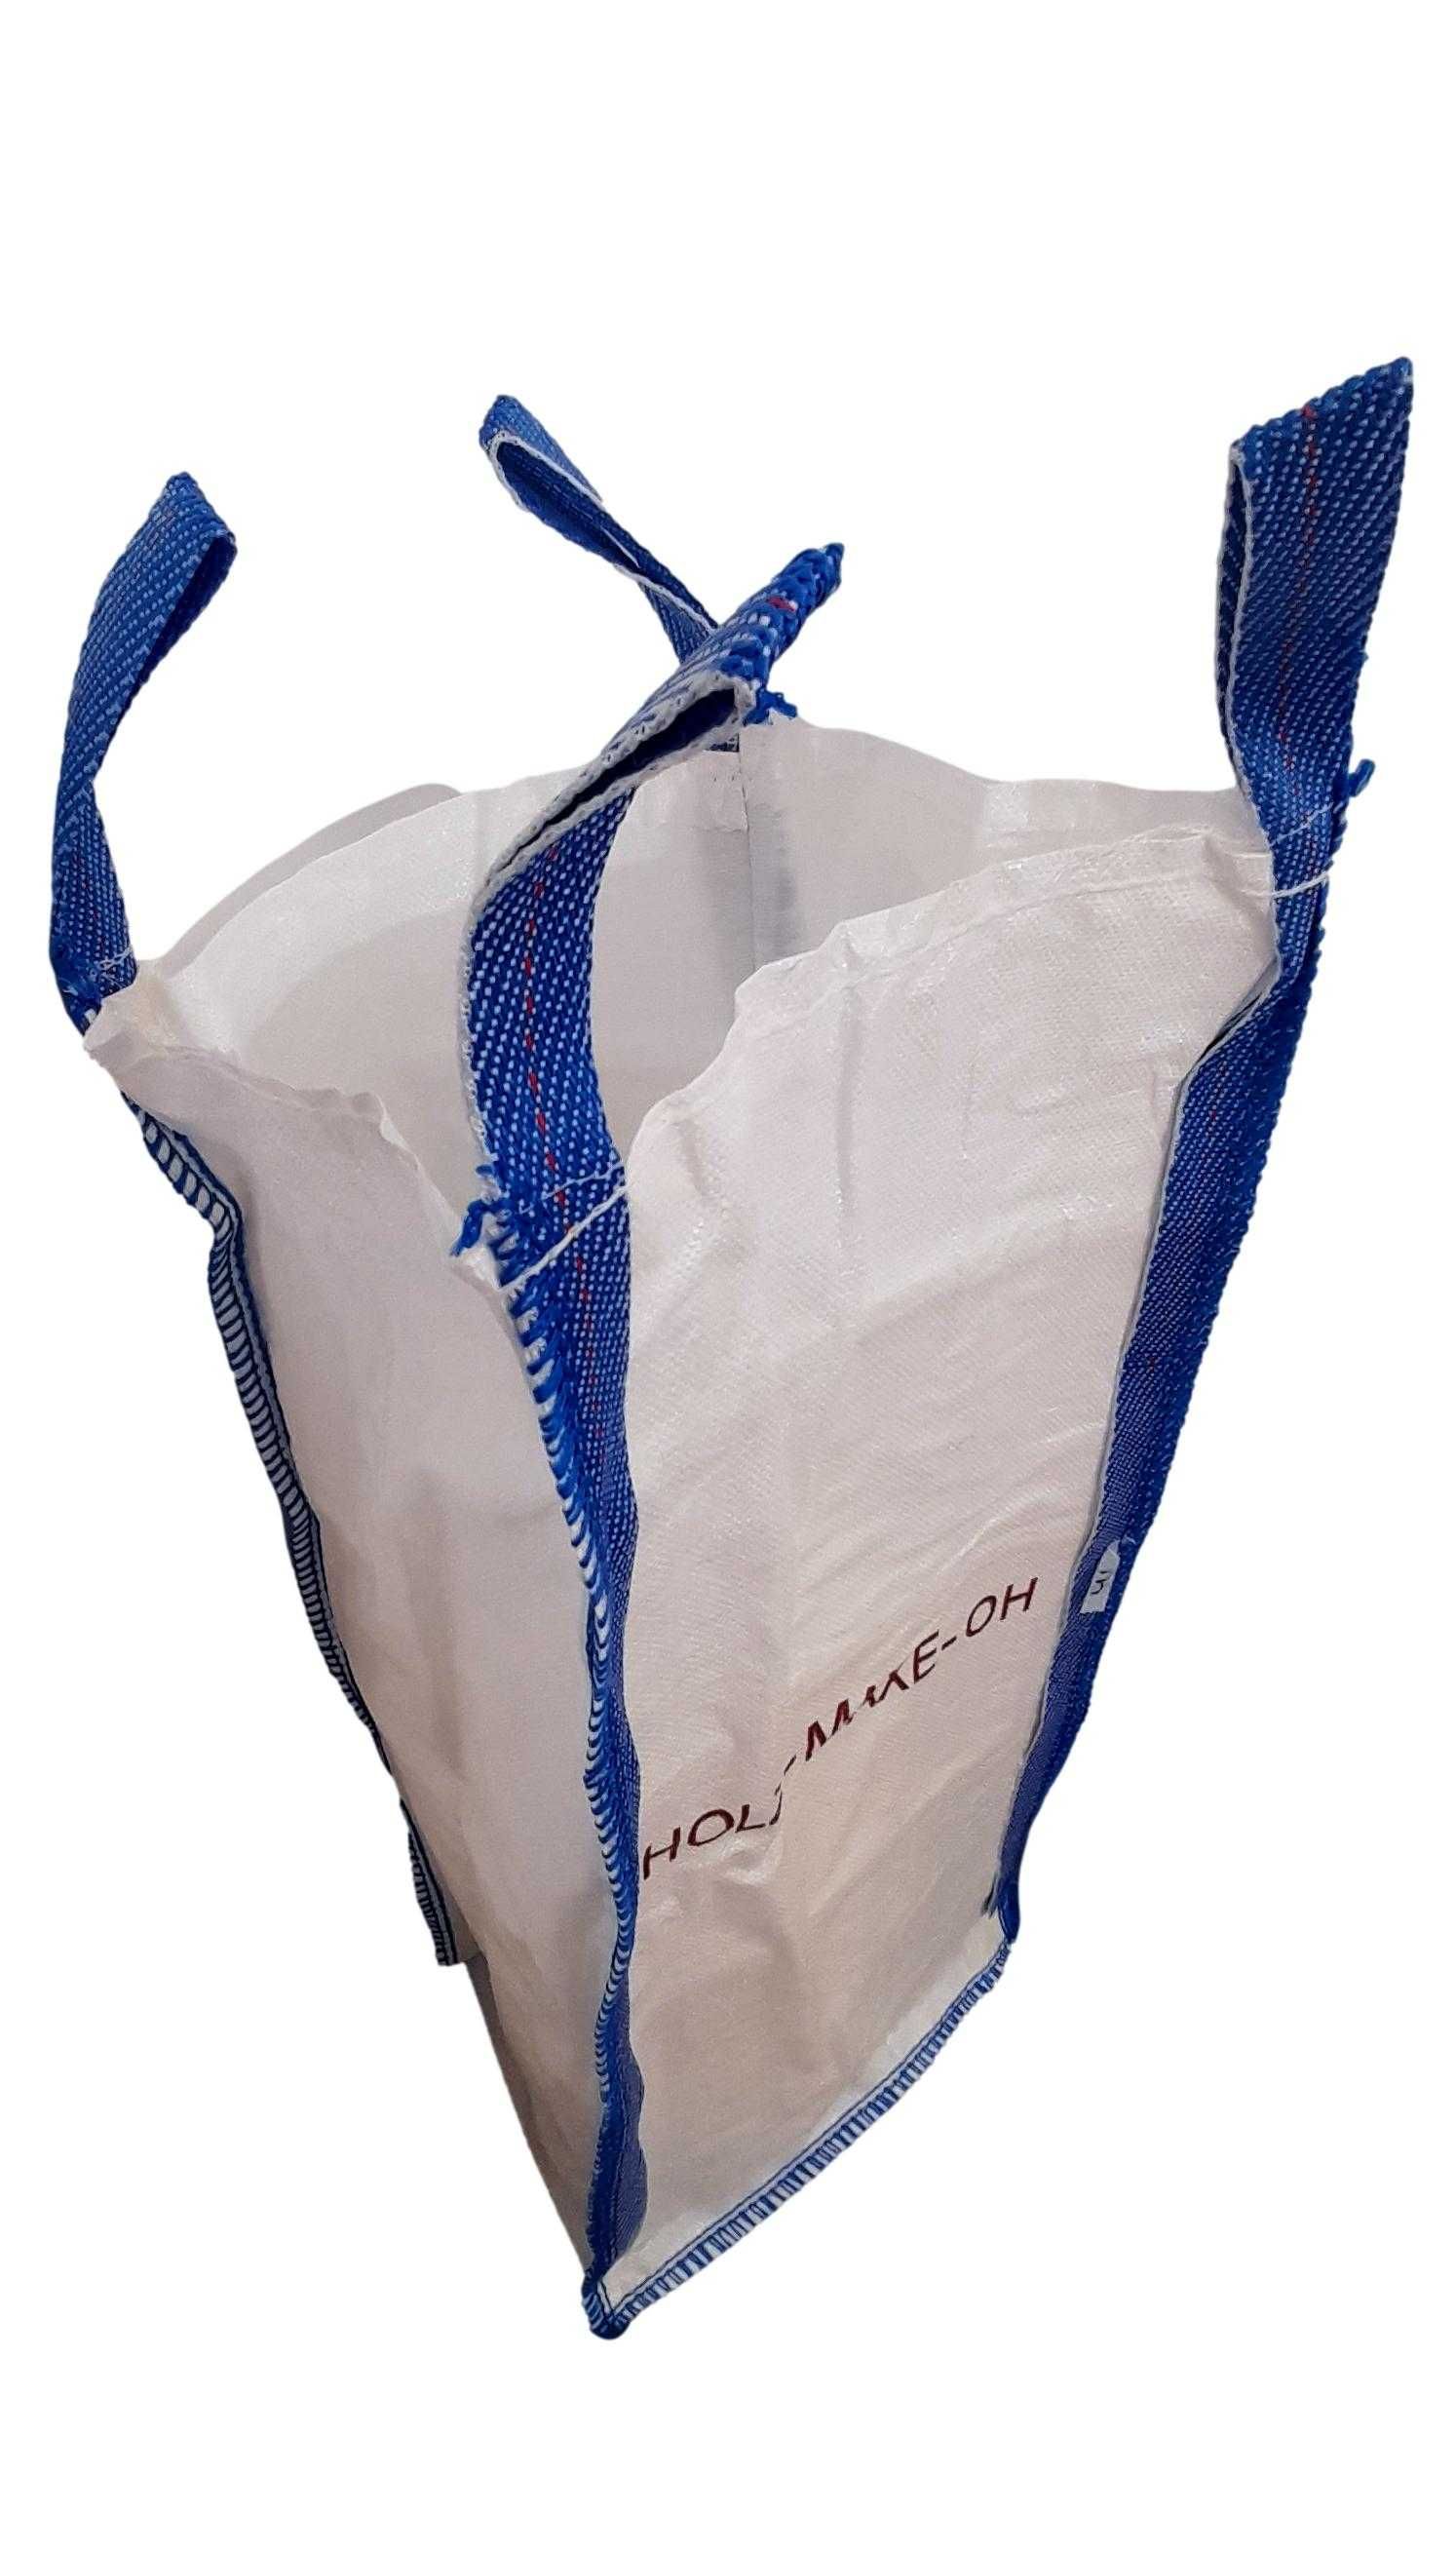 big bag worki używane na art sypkie i spożywcze 1000kg